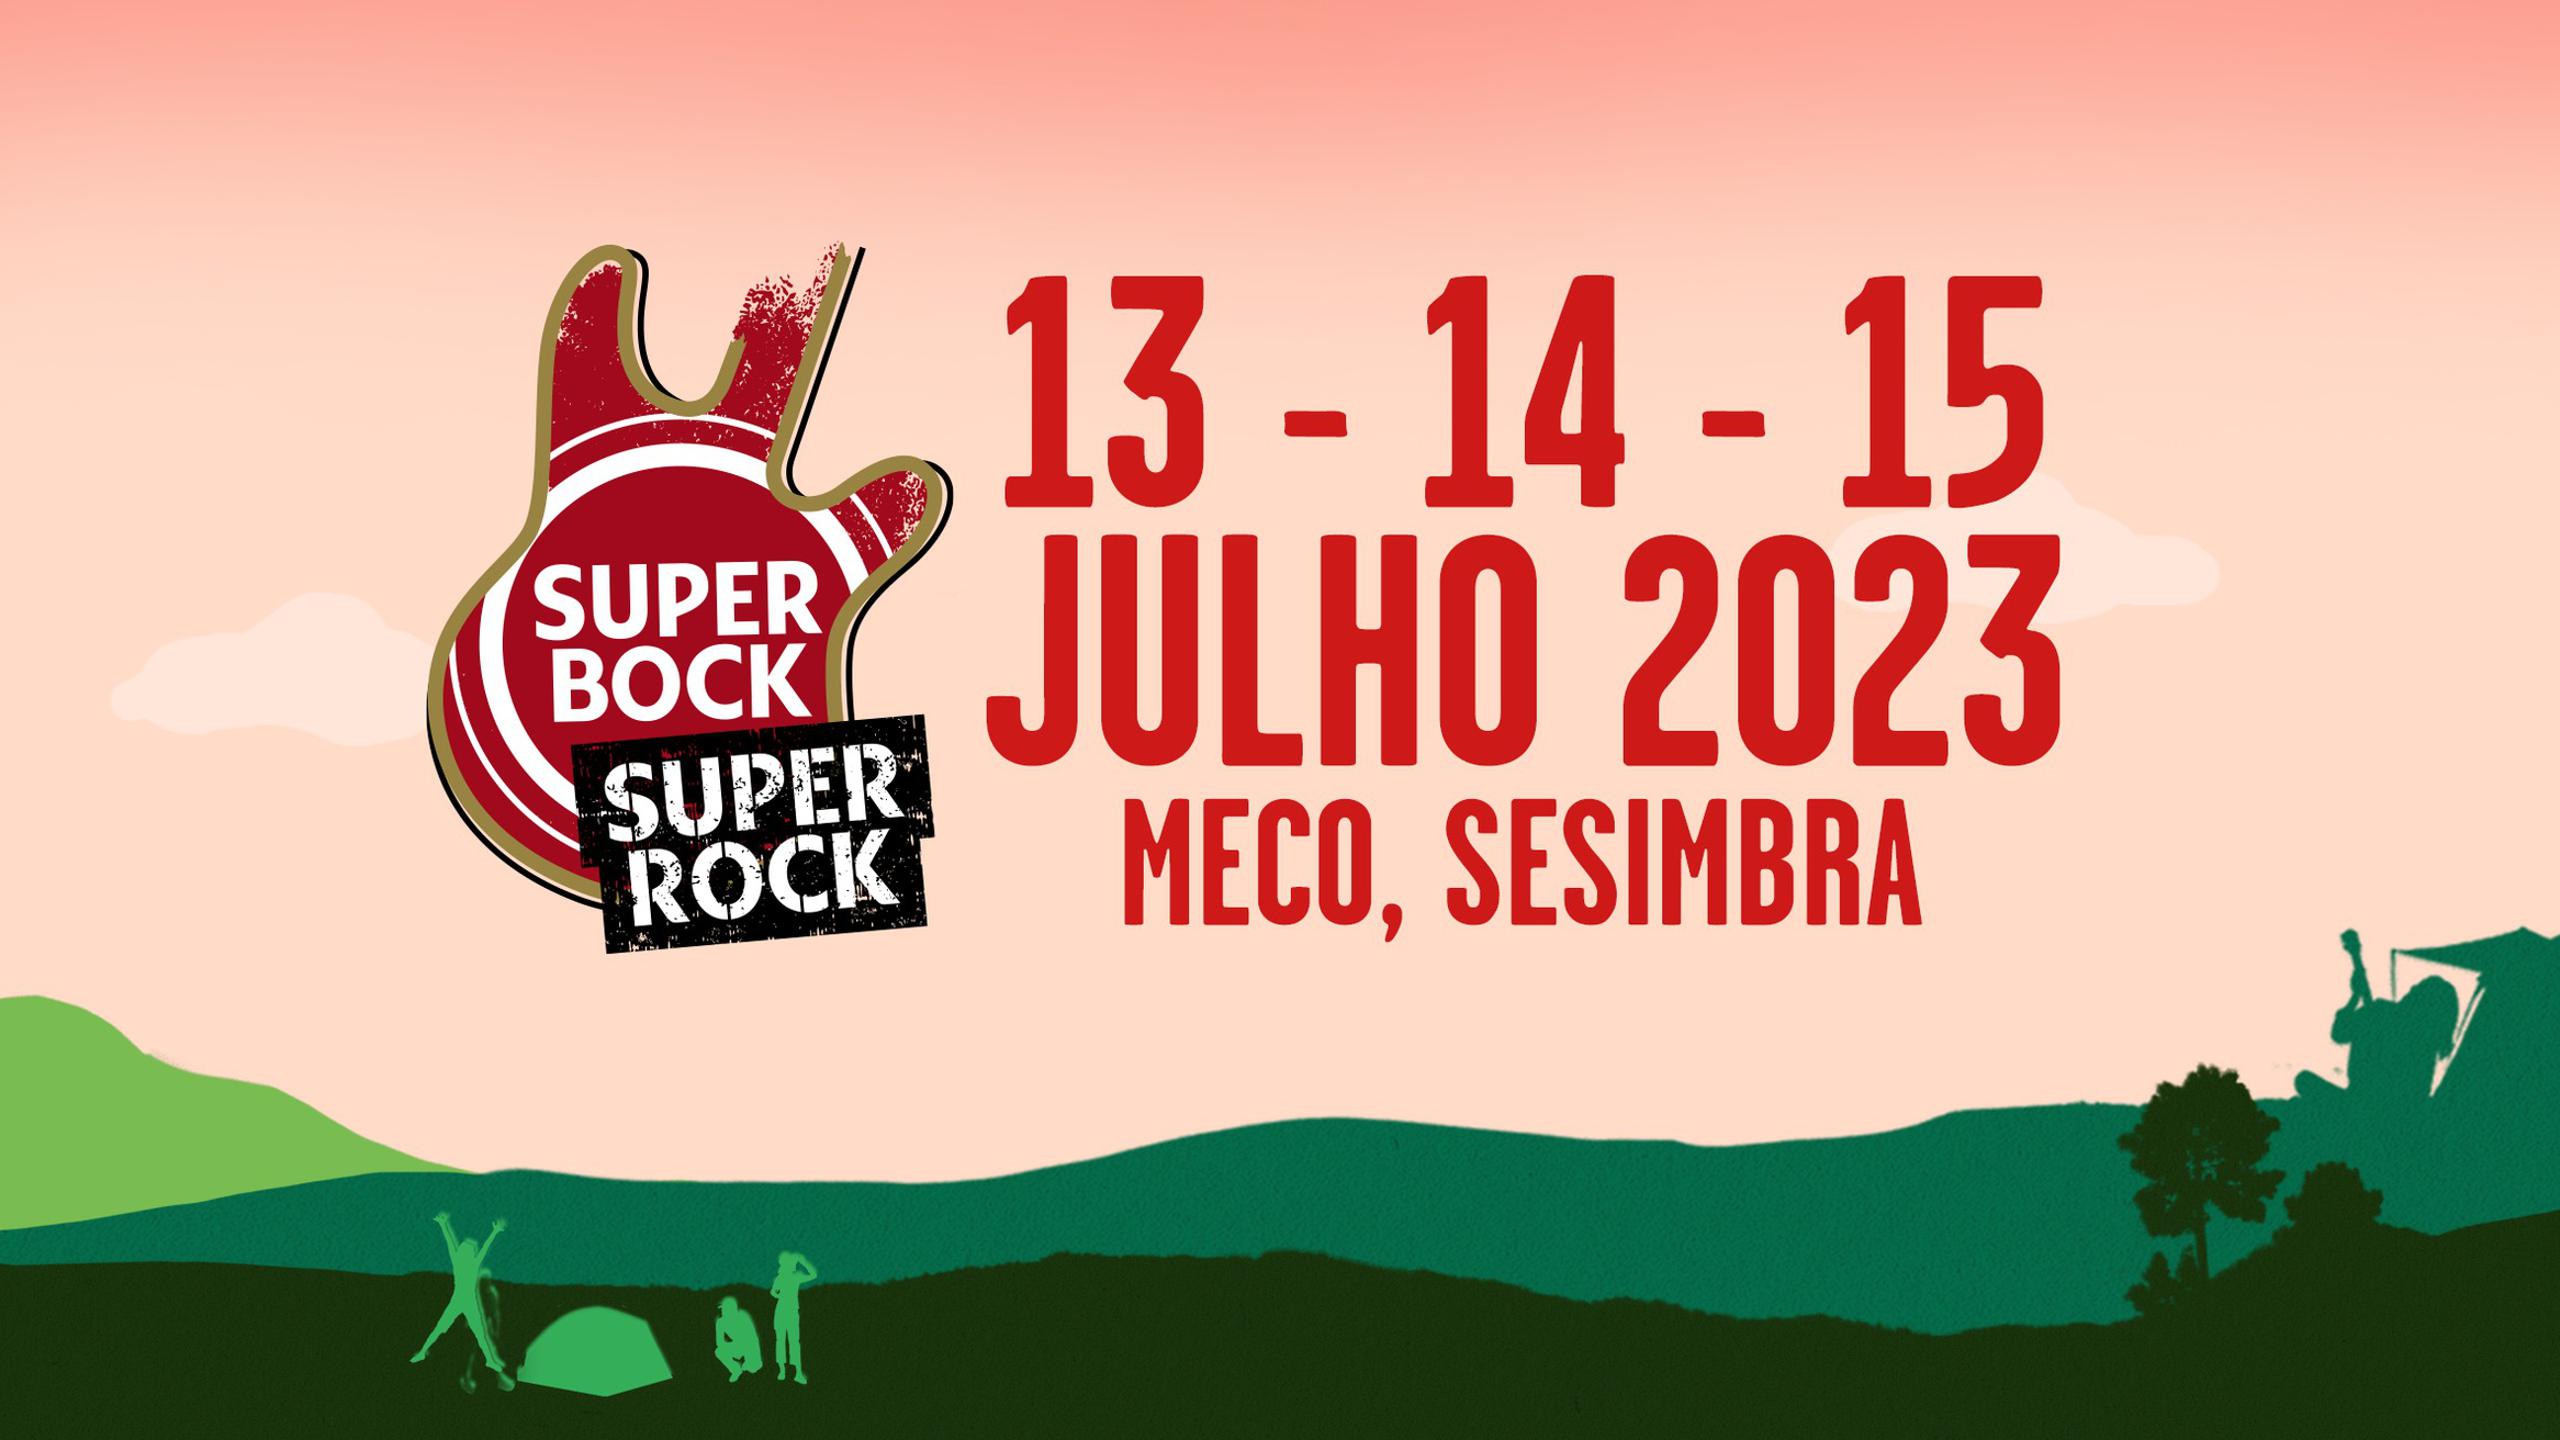 Super Bock Super Rock 2023. Tickets, lineup, bands for Super Bock Super